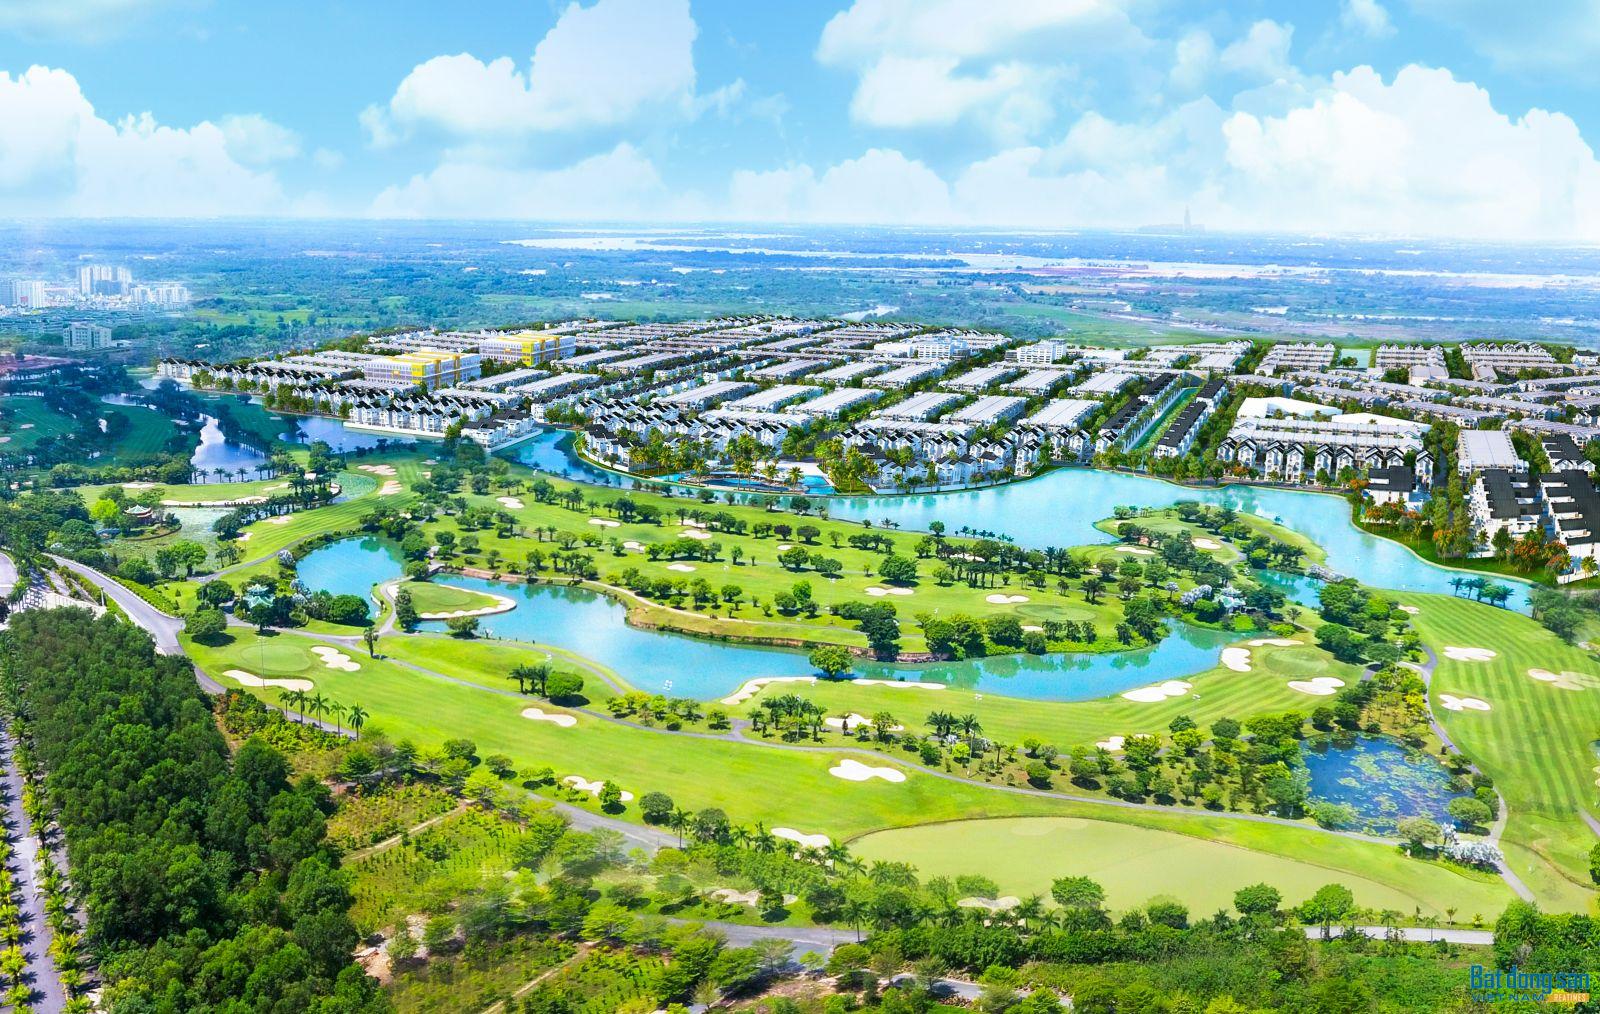 Dự án Bien Hoa New City nằm liền kề sân golf với nhiều tiện ích đa dạng